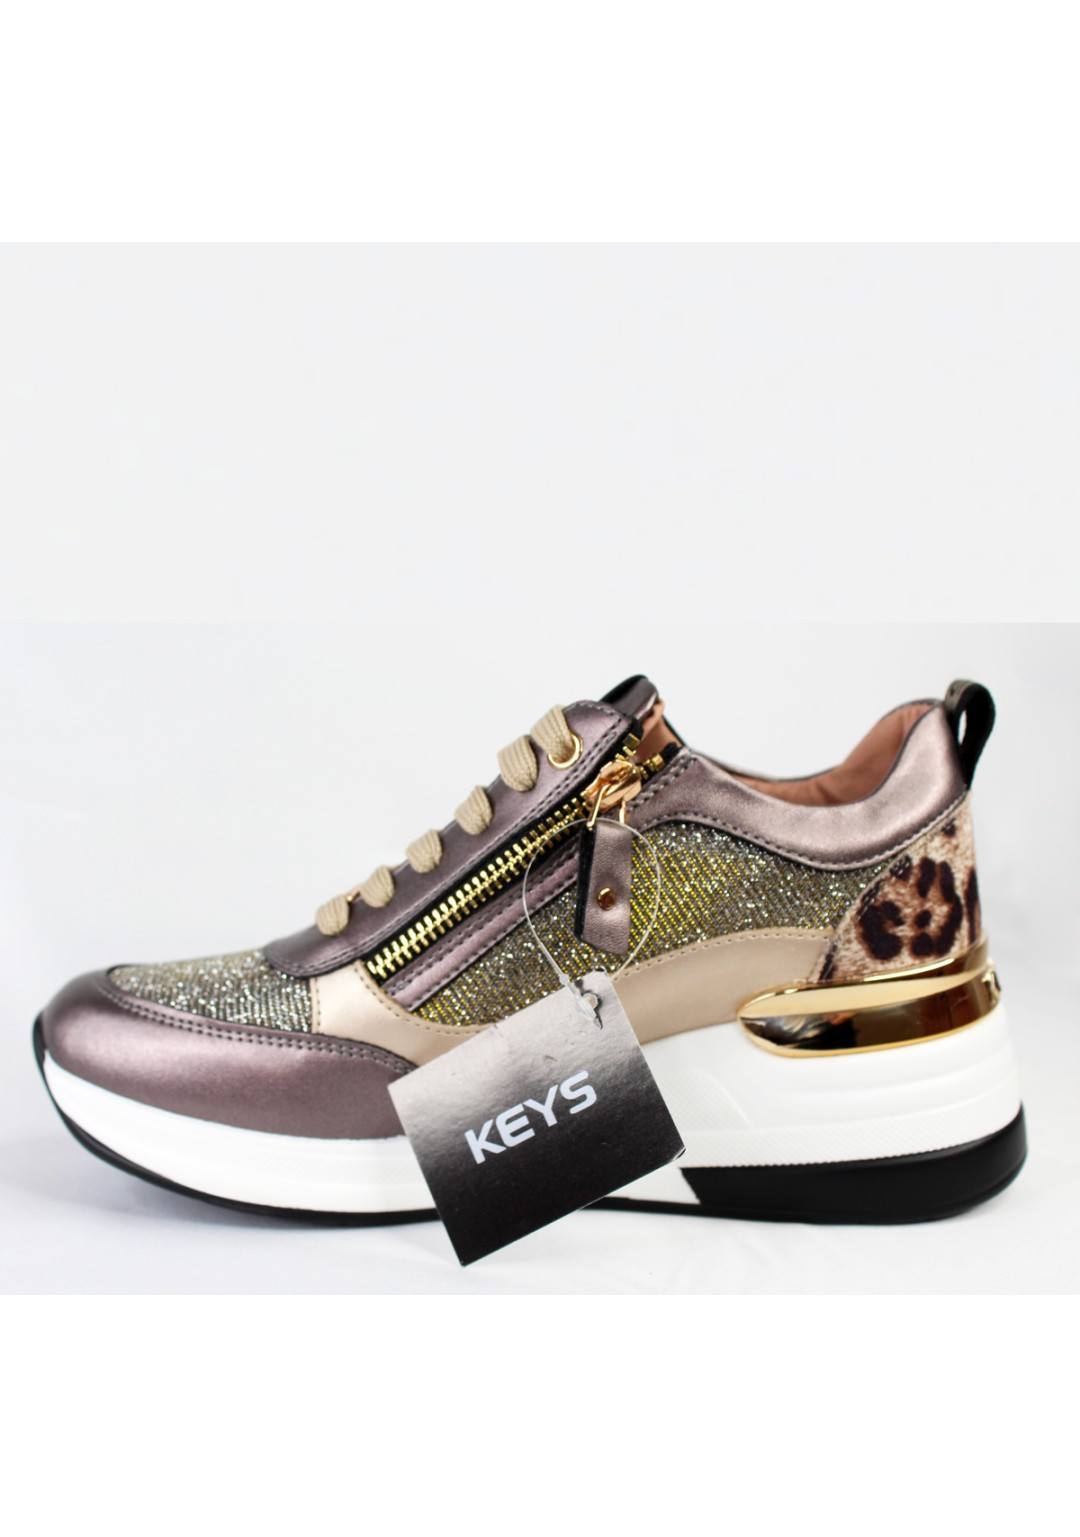 KEYS - Sneaker zeppa - Donna - K-6825